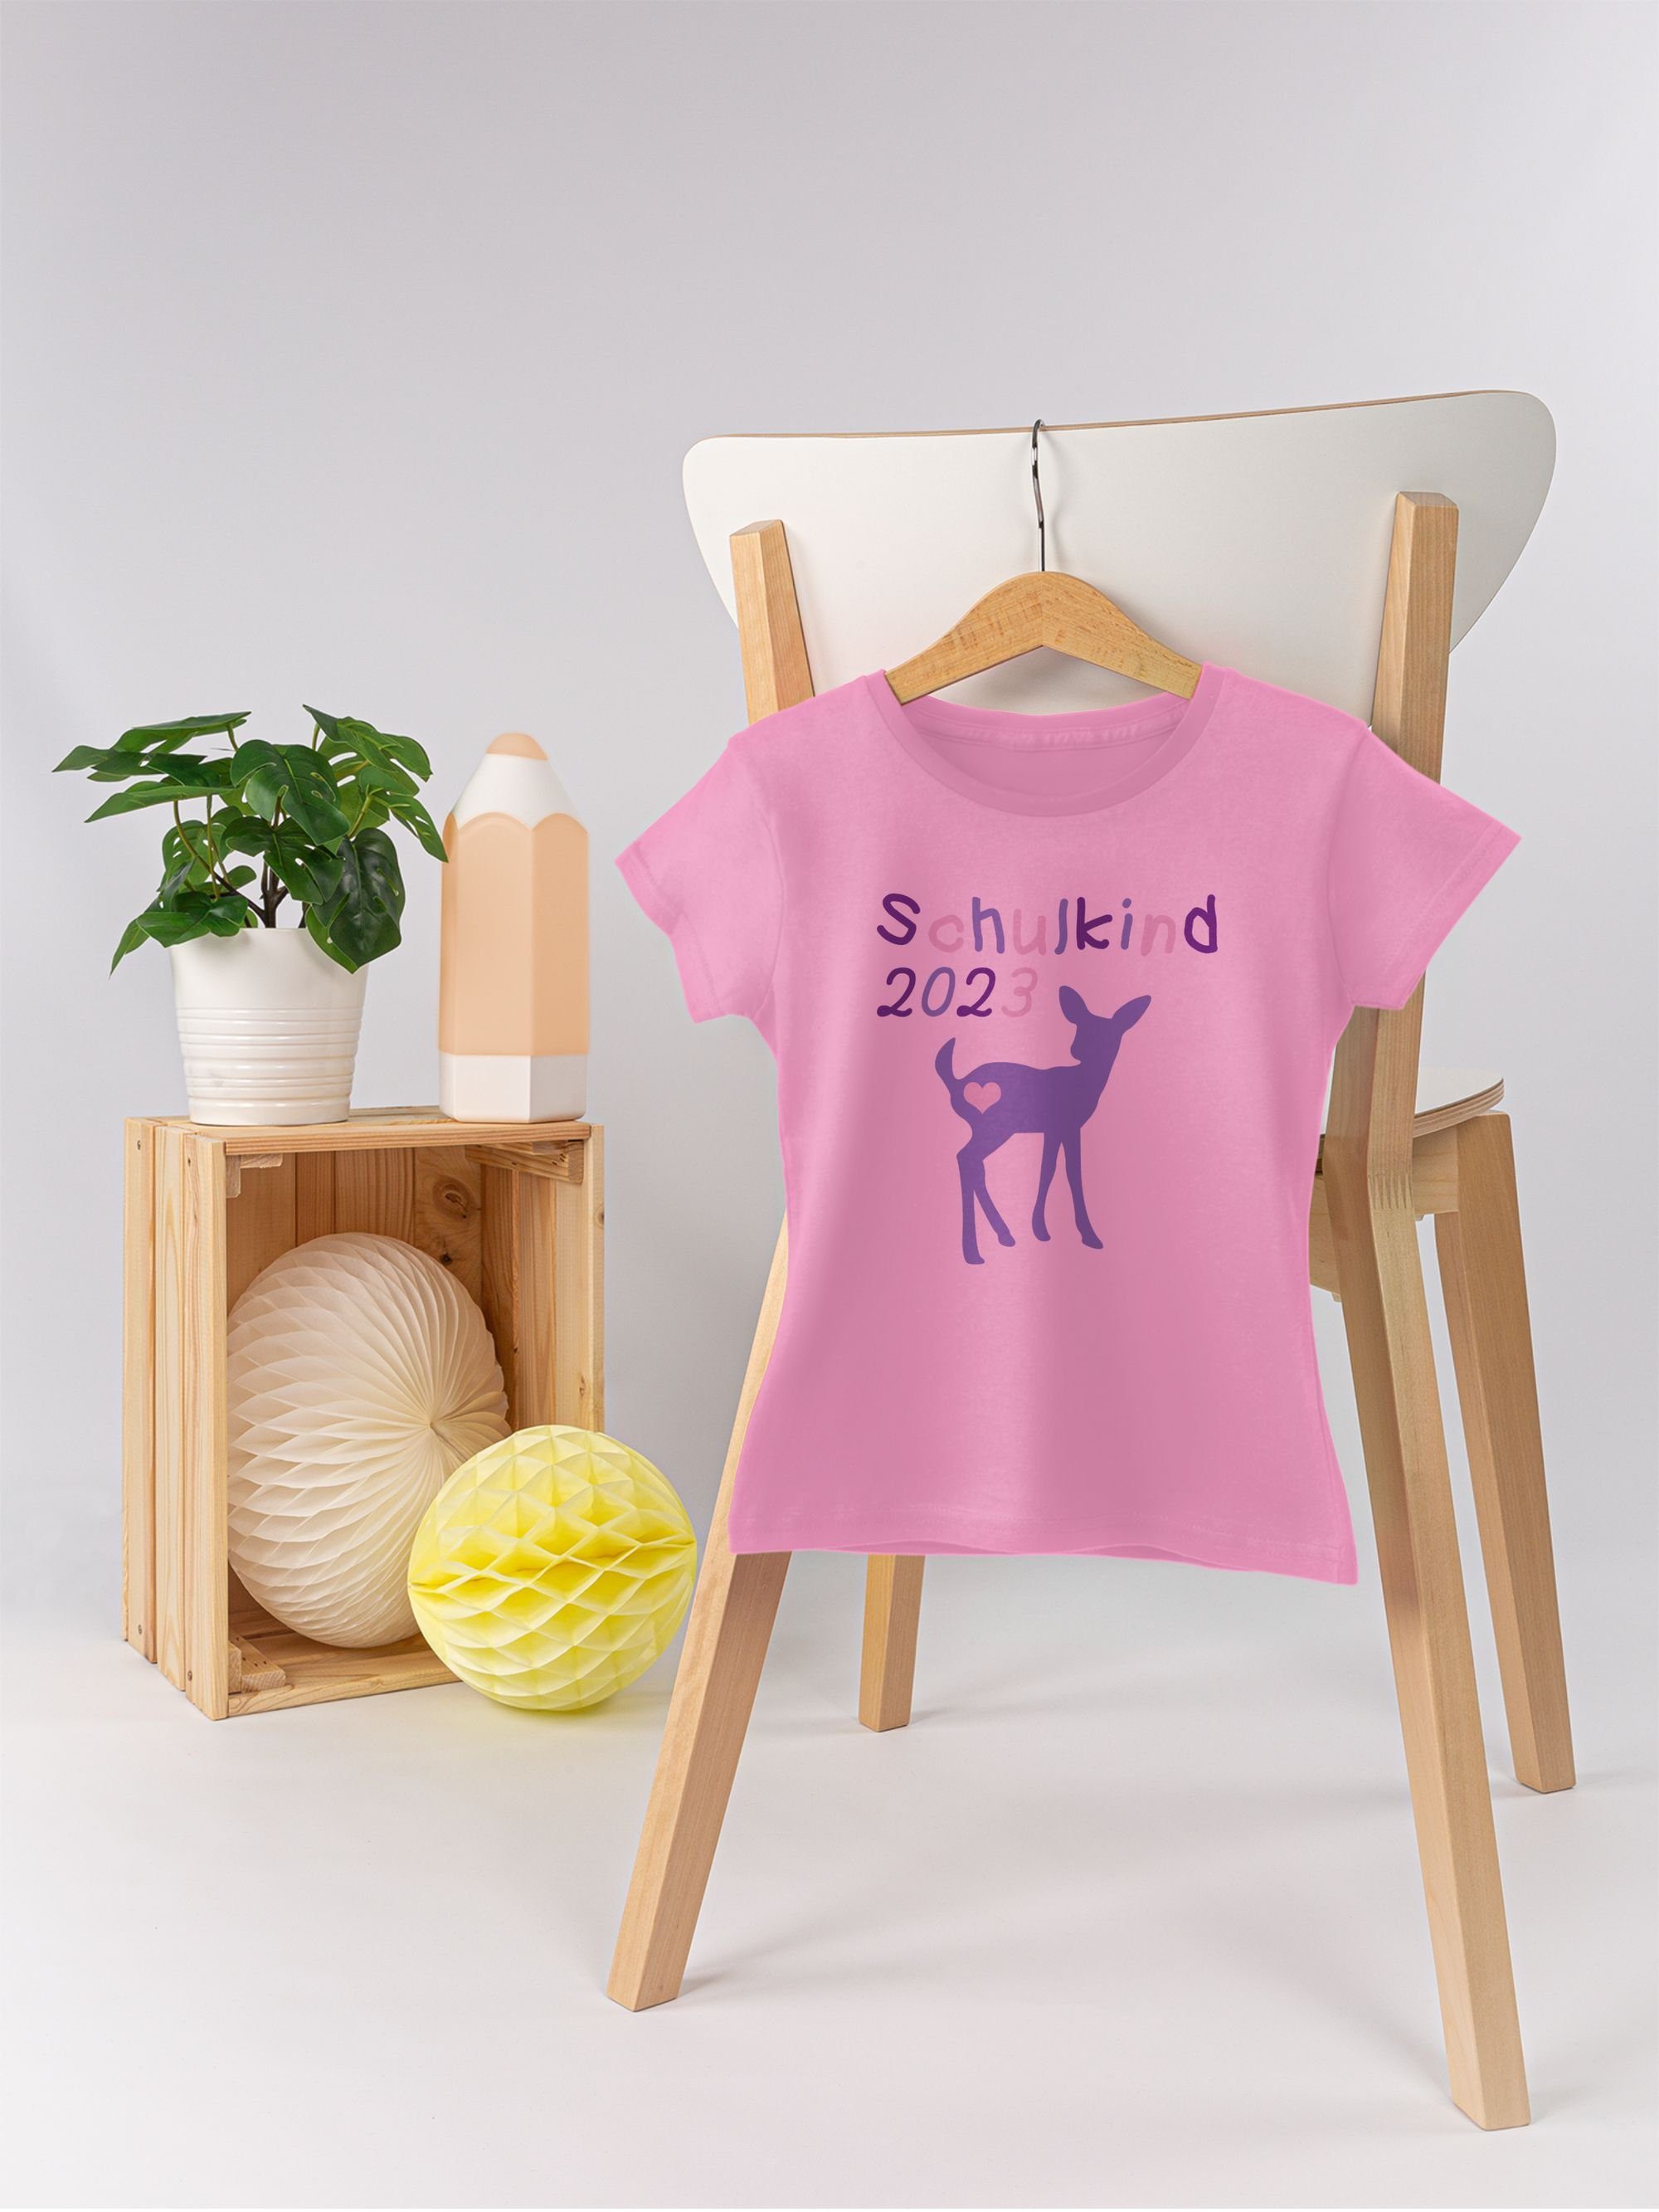 Einschulung 2023 Kitz Schulkind 1 Reh T-Shirt Mädchen Shirtracer Rosa Lila